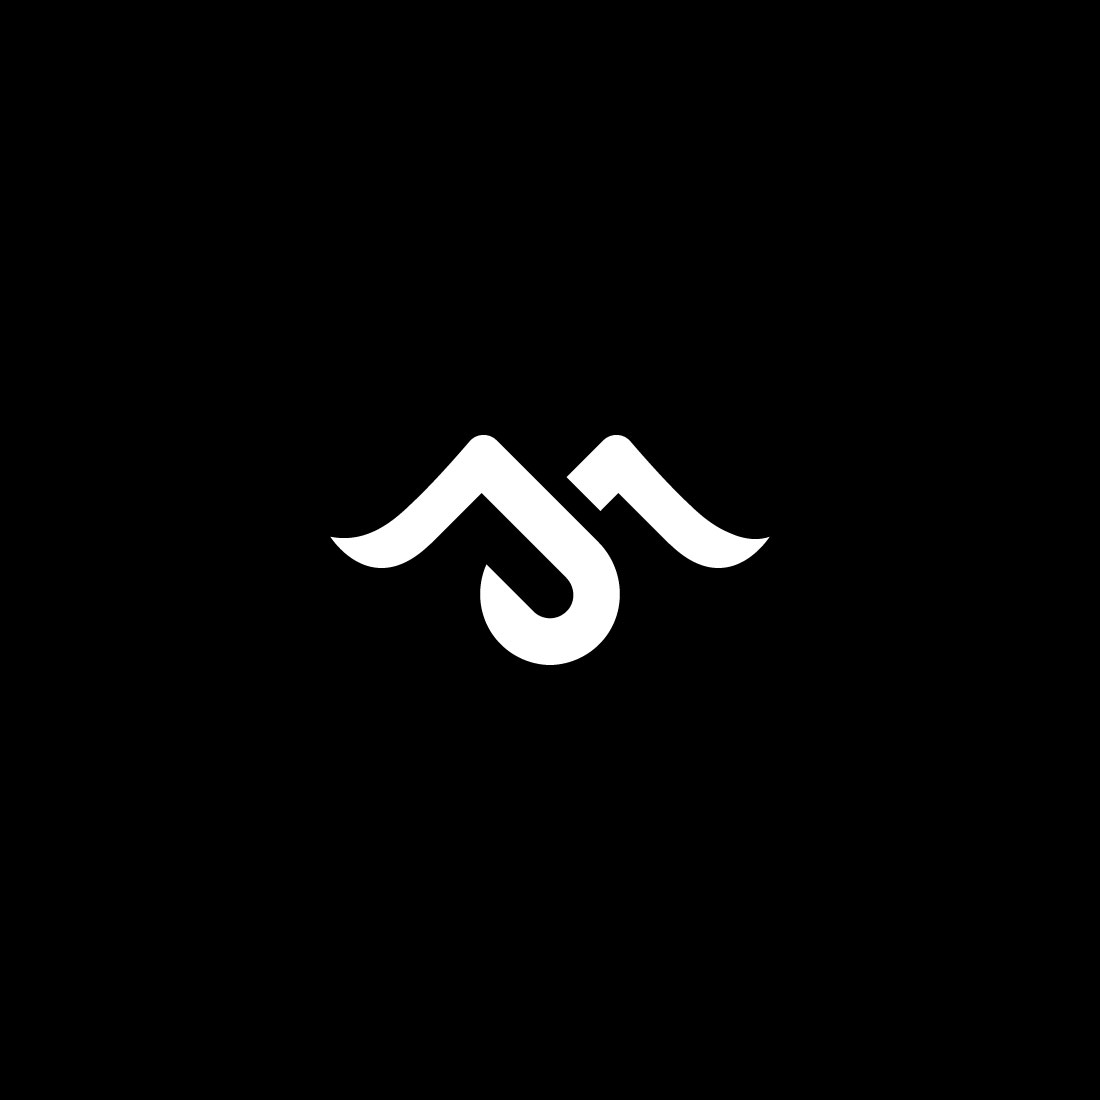 Premium Vector | Mj logo